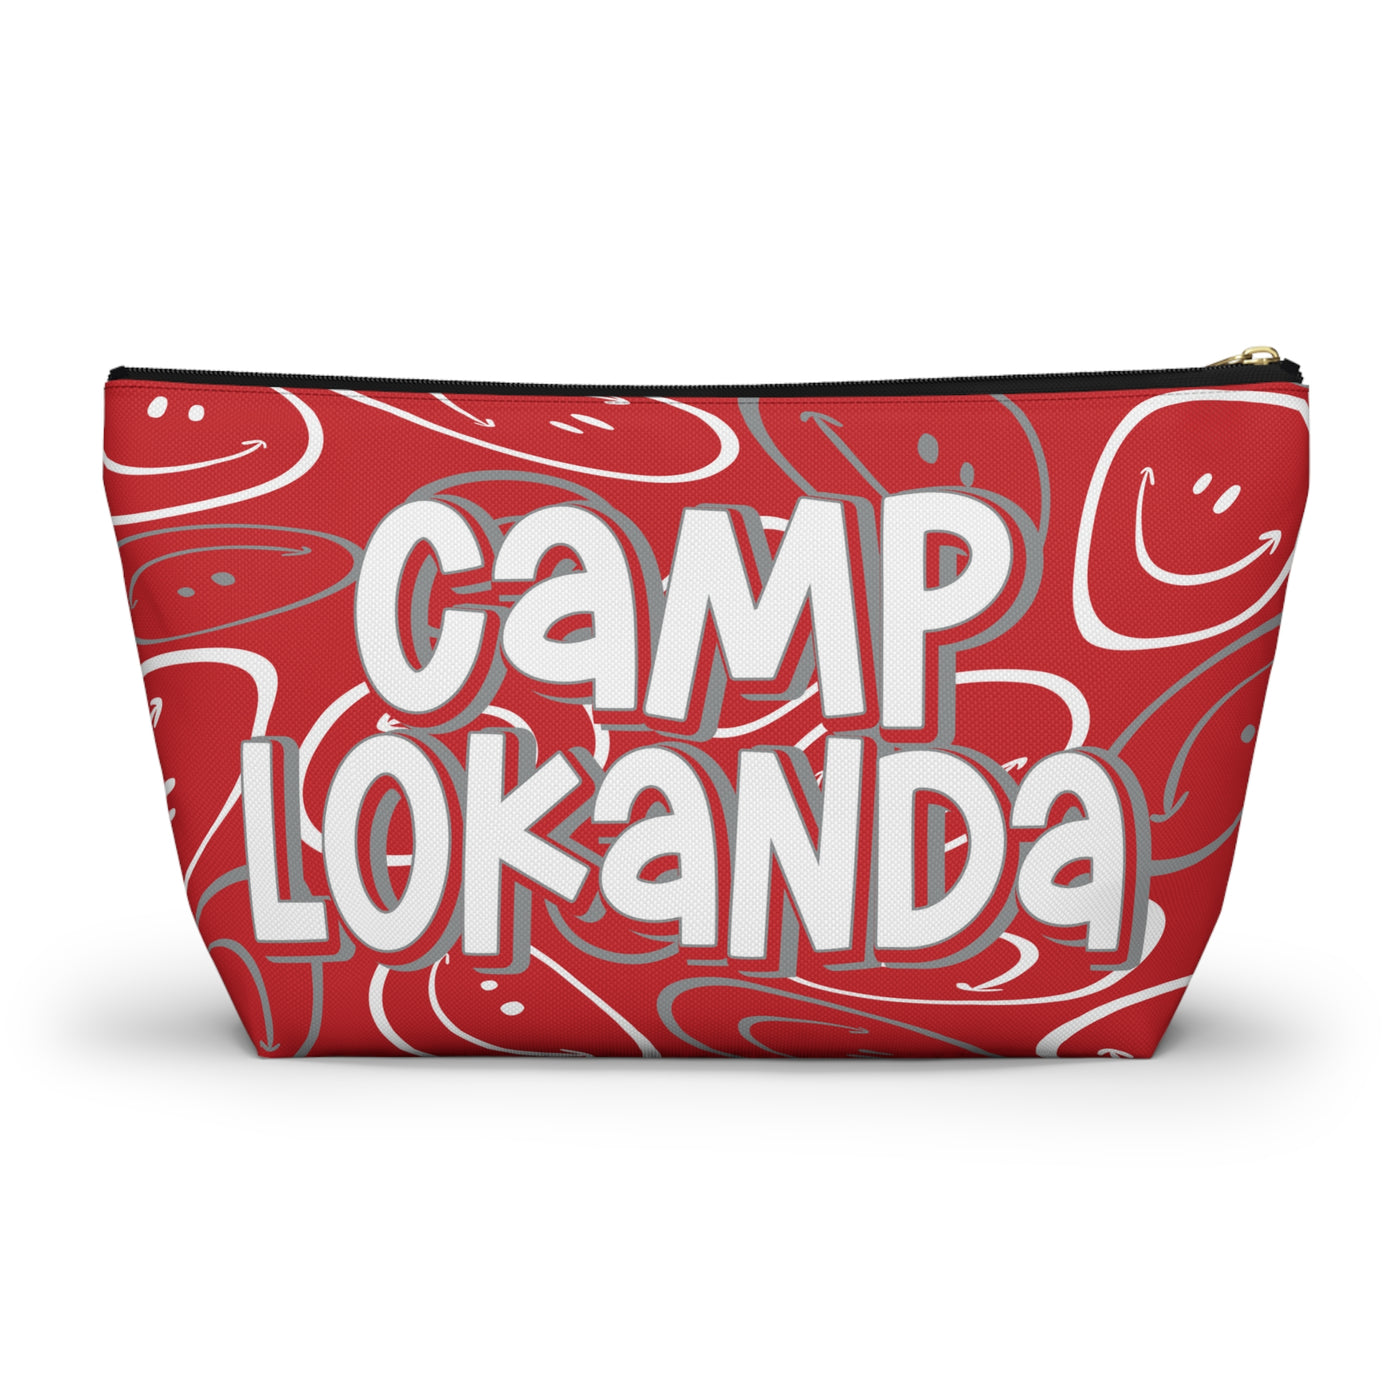 Camp Lokanda Two Sided Makeup Bag